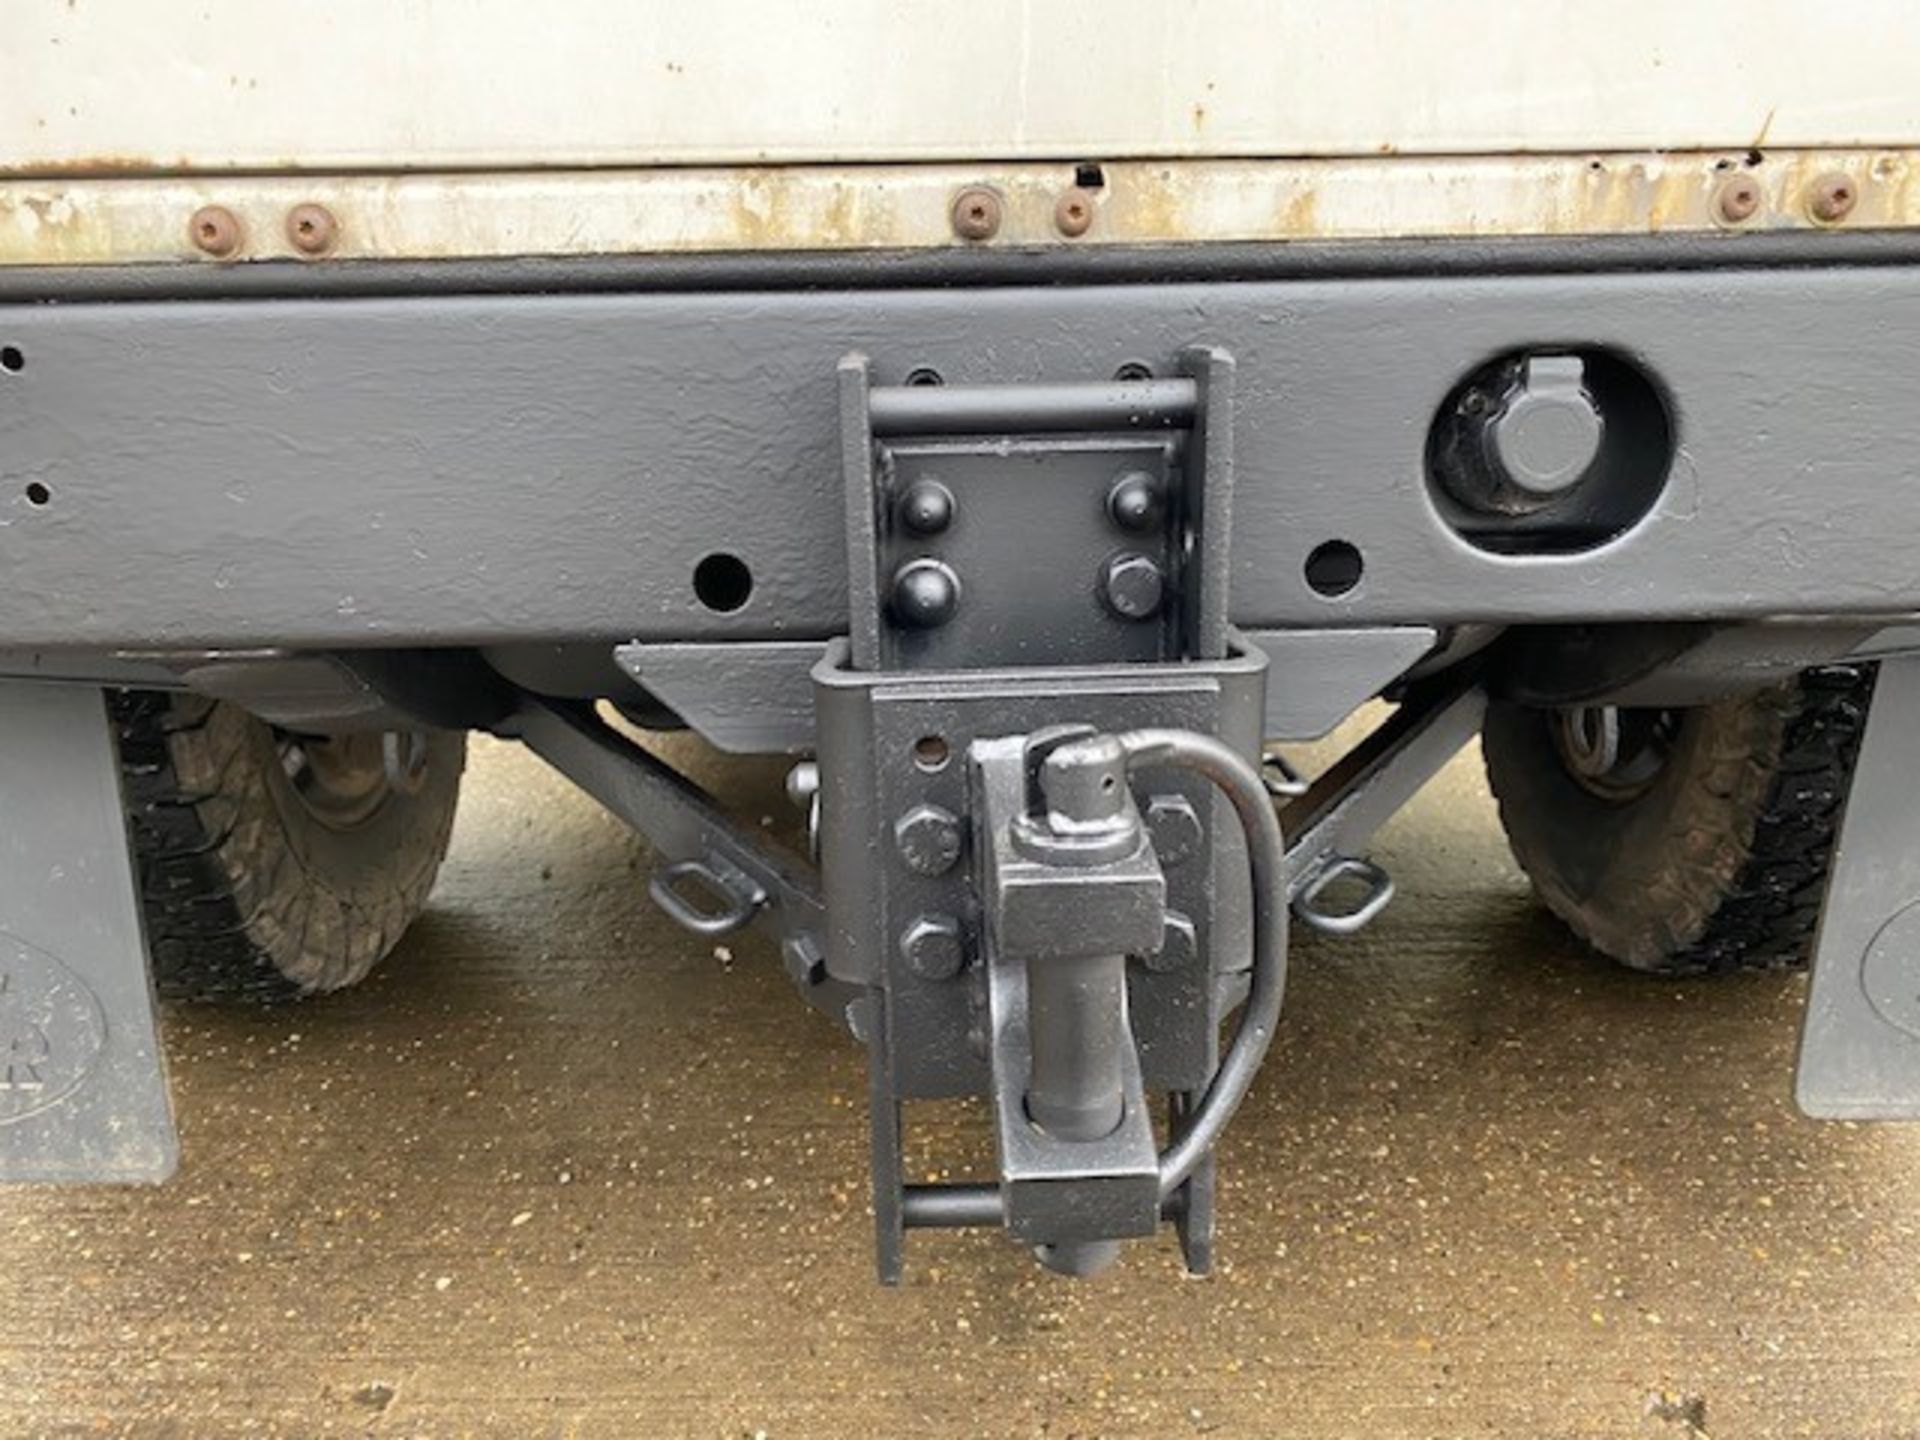 Land Rover Defender 110 2.4 Utility (mobile workshop) - Image 28 of 64